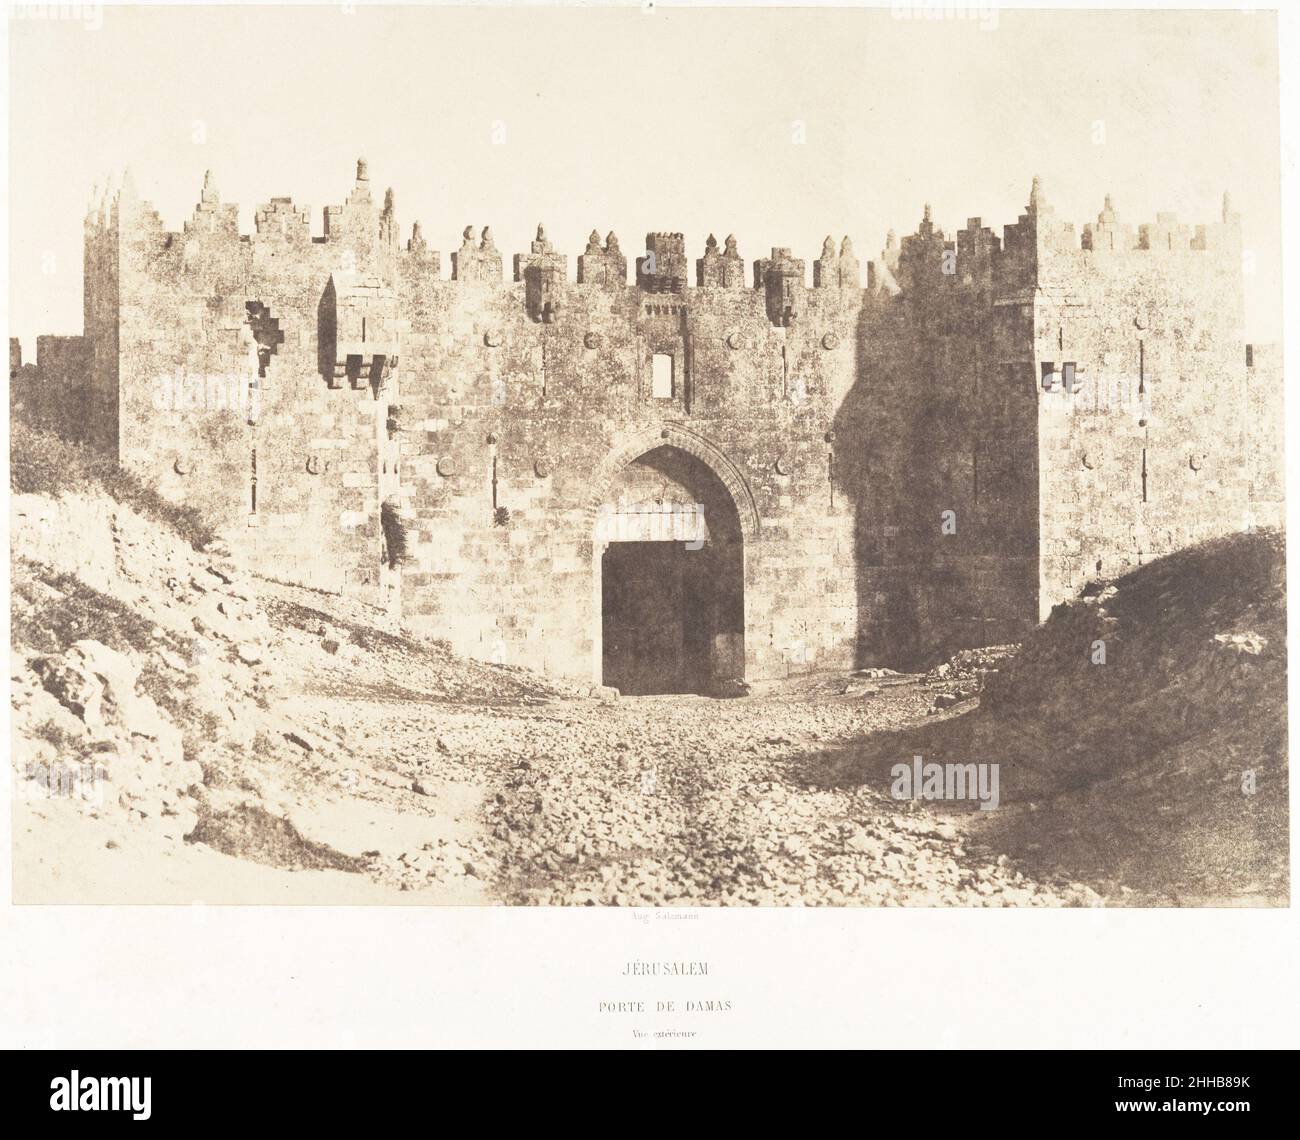 Jérusalem, Porte de Damas, Vue extérieure 1854 Auguste Salzmann French. Jérusalem, Porte de Damas, Vue extérieure  287037 Stock Photo